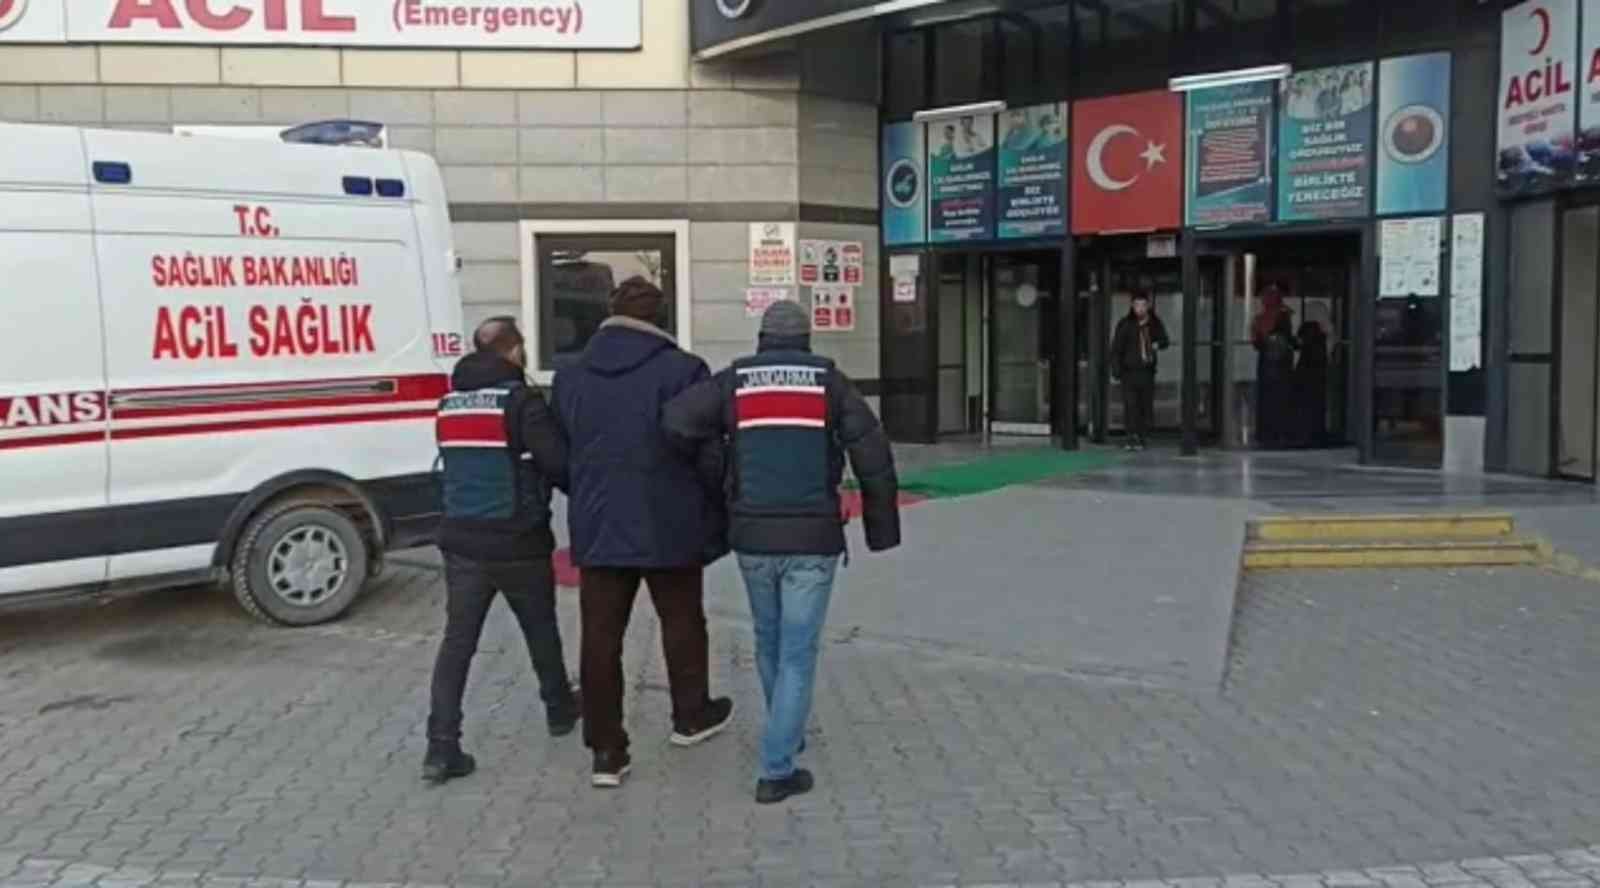 Polis memurunun şehit edilmesine yardım eden 2 kişi tutuklandı #van